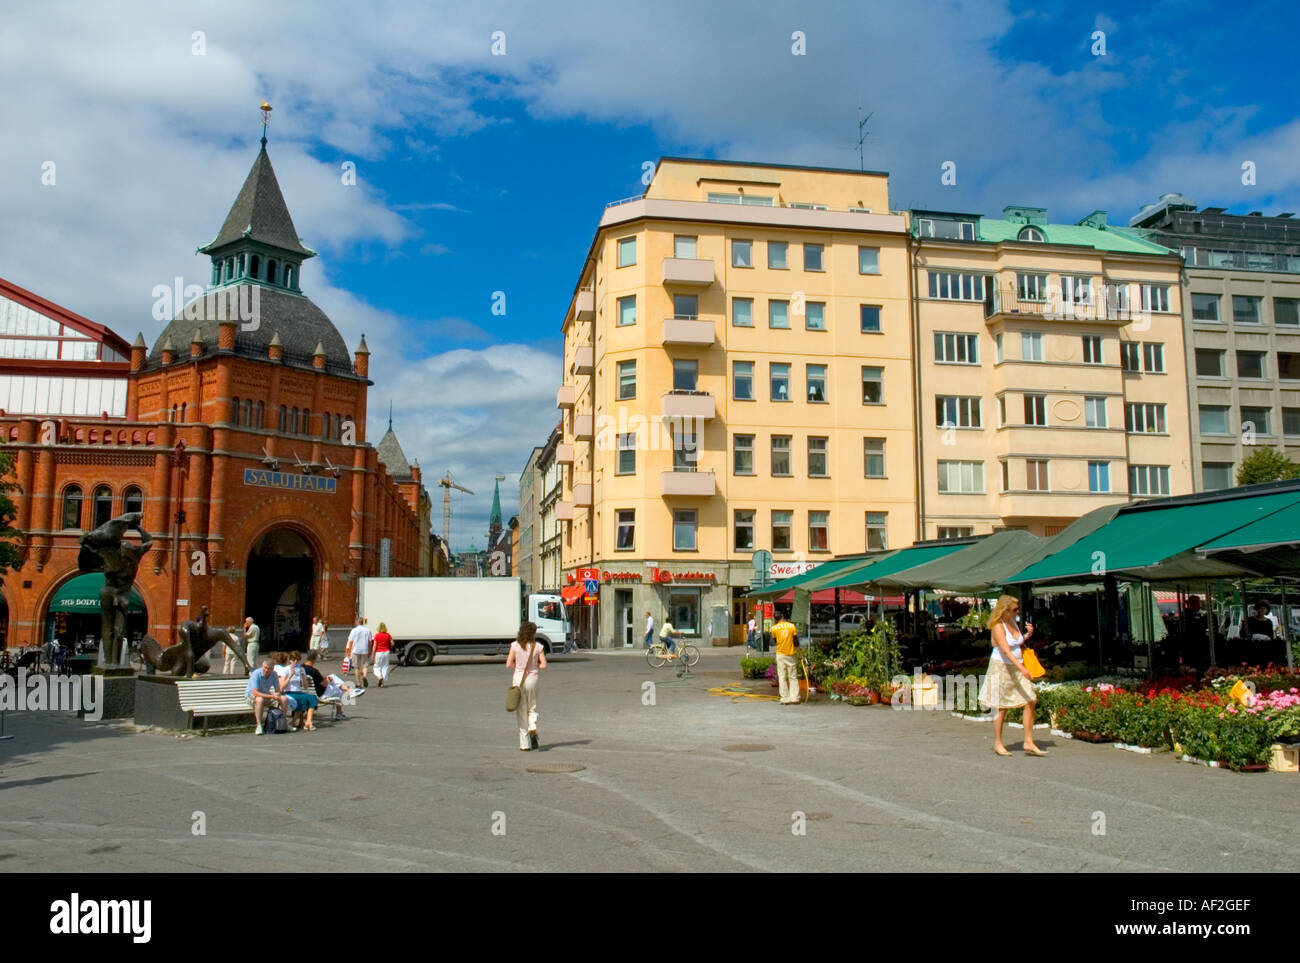 Östermalm market square Stockholm Sweden EU Stock Photo